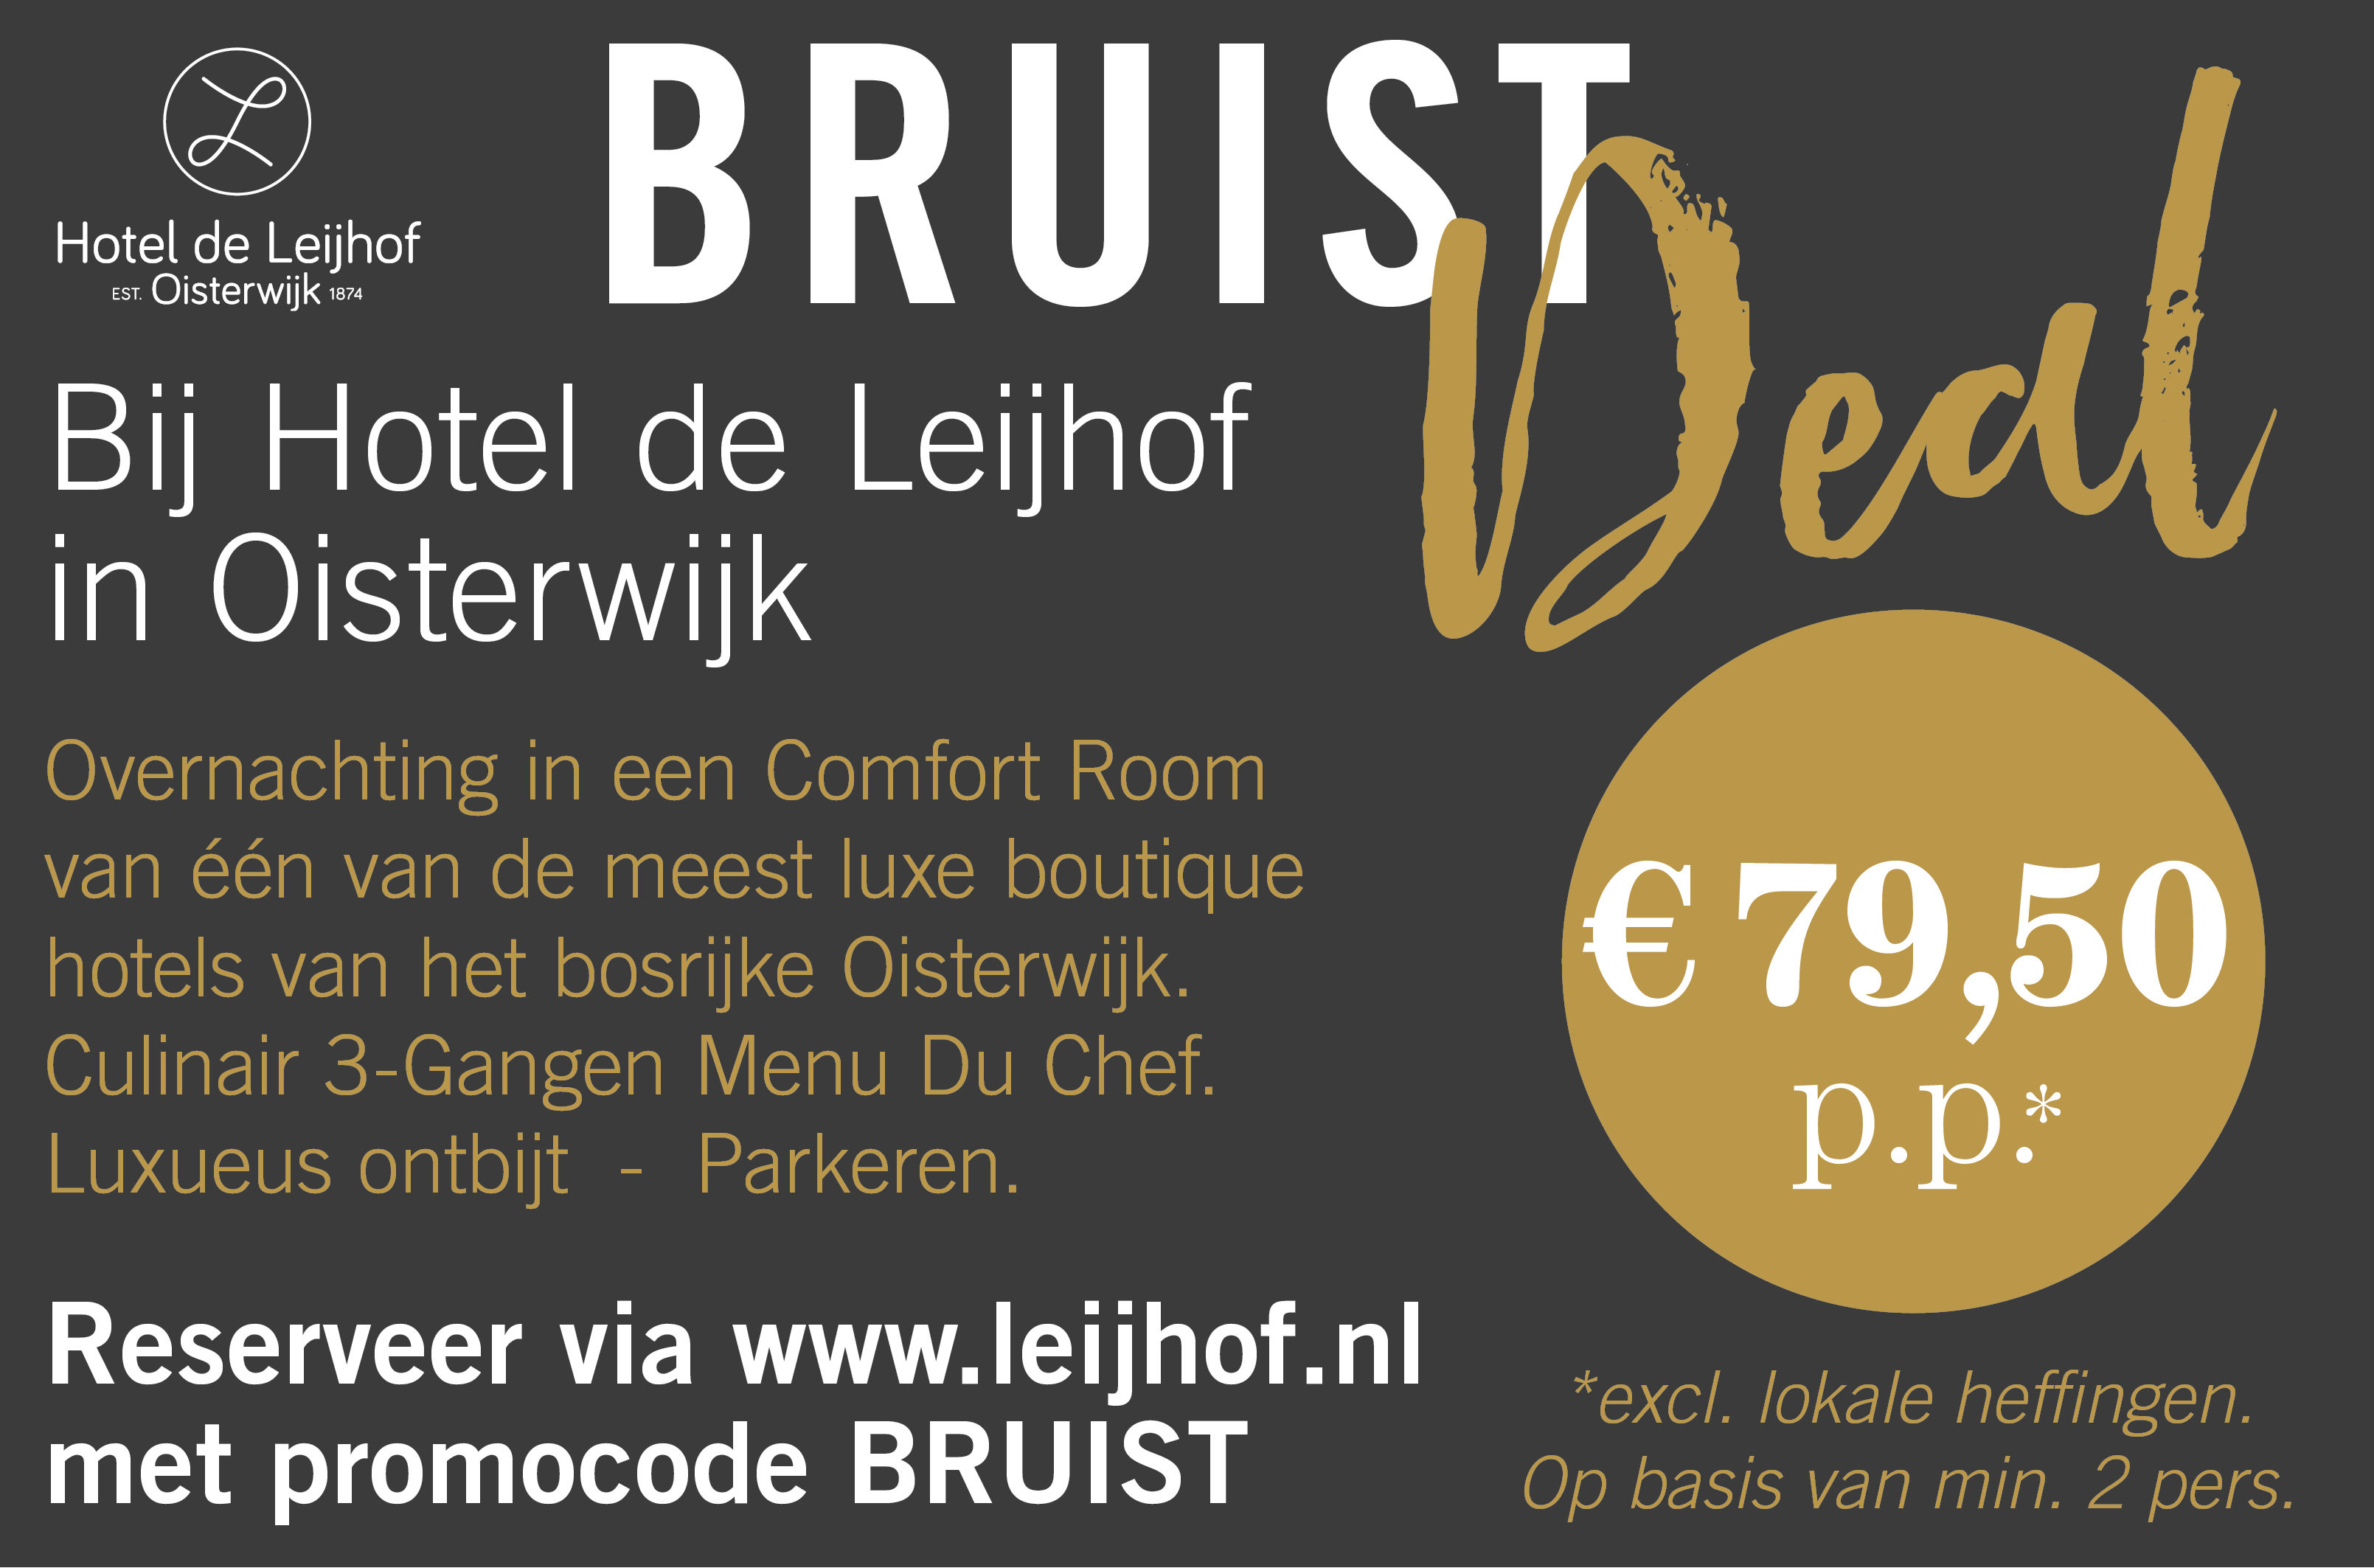 Verblijf in Hotel de Leijhof Oisterwijk met deze Bruist Deal